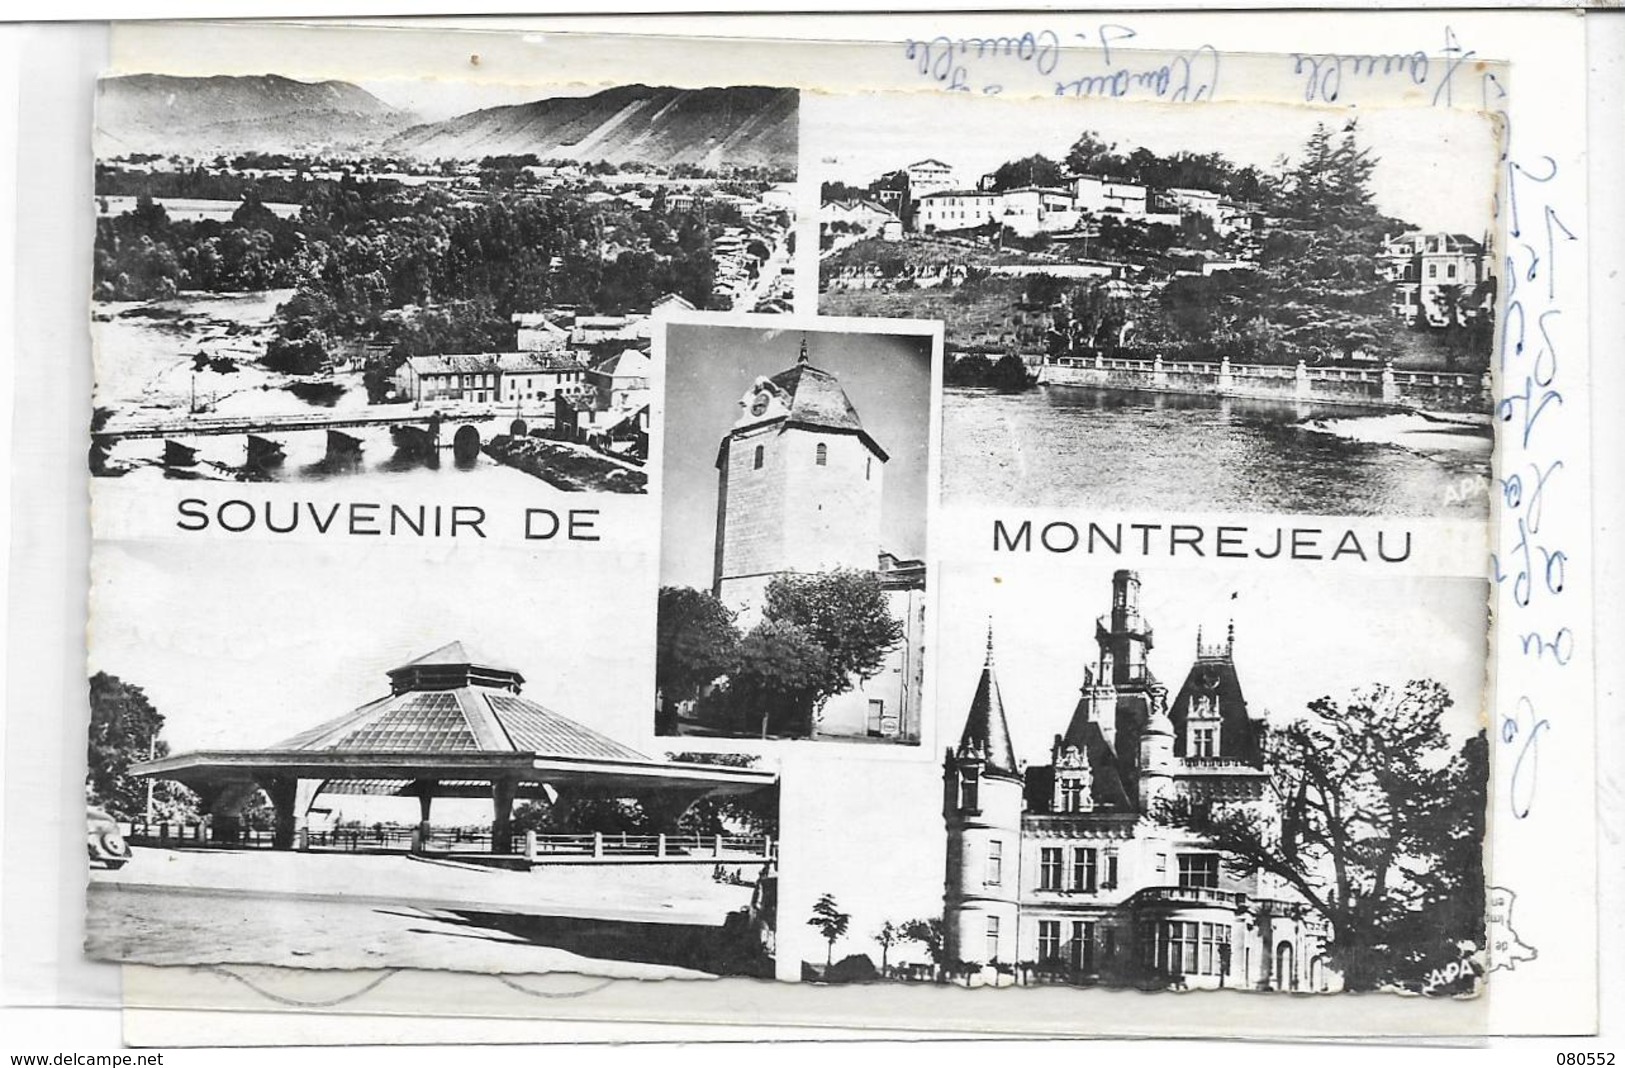 31 LOT 1 A de 8 belles cartes de Haute-Garonne